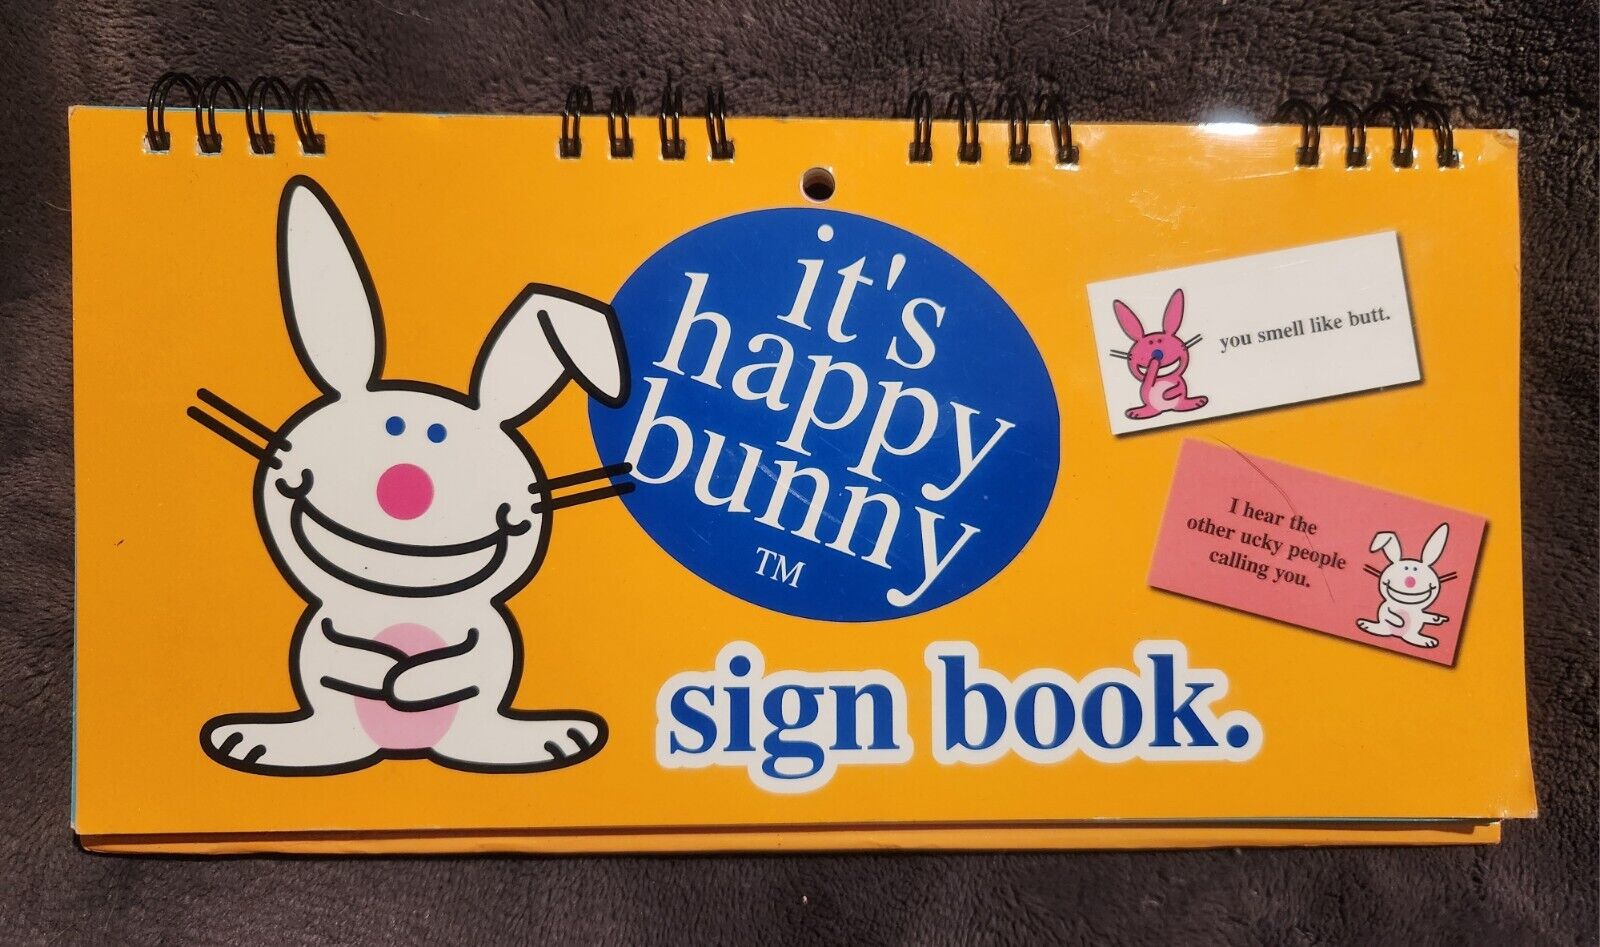 It's Happy Bunny JIM BENTON  sign book FLIP desk or wall signs #1444 funny 10x6